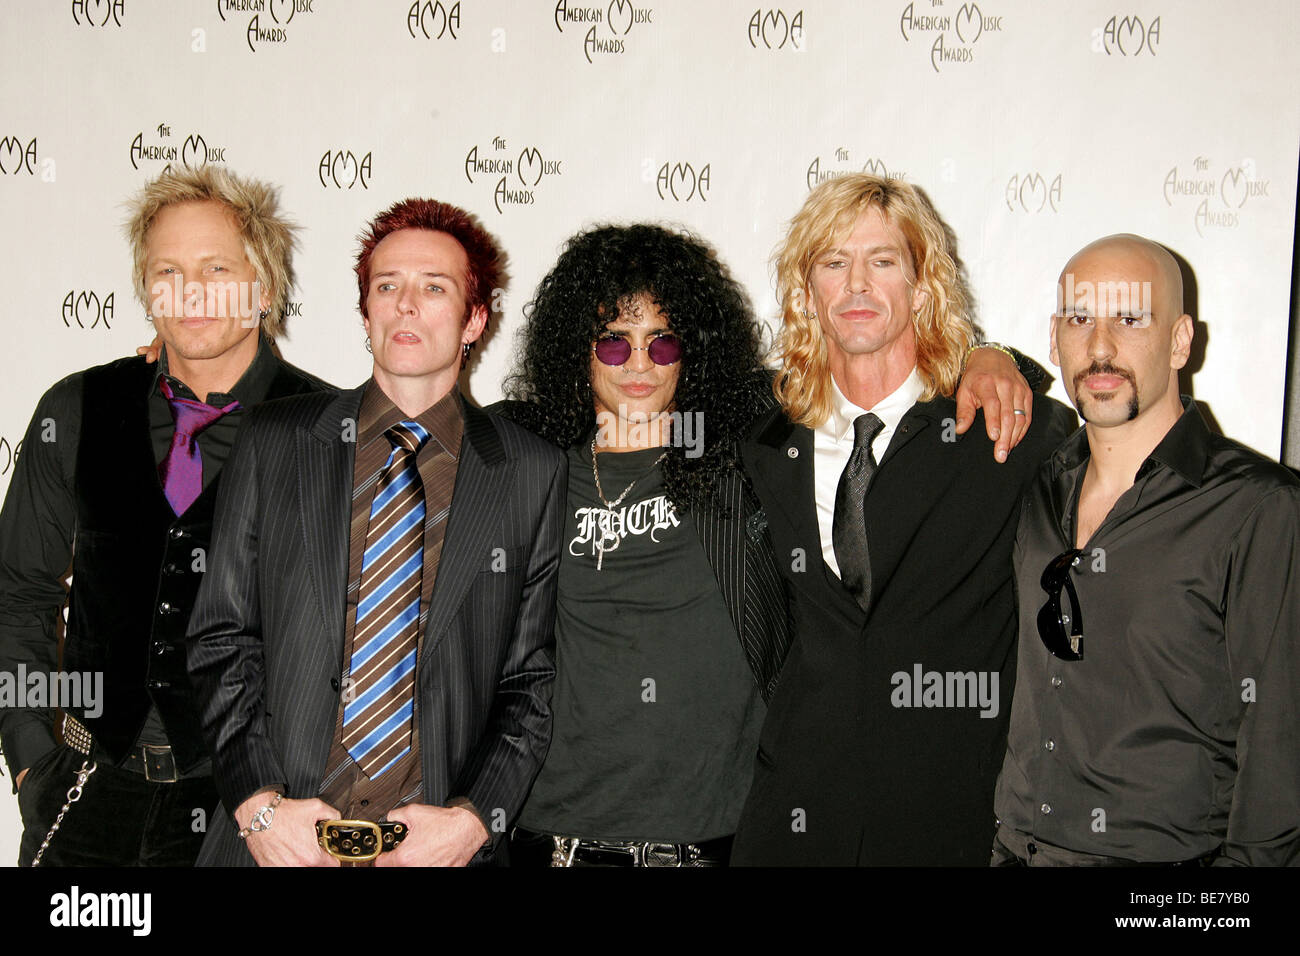 VELVET REVOLVER - grupo de rock estadounidense Foto de stock